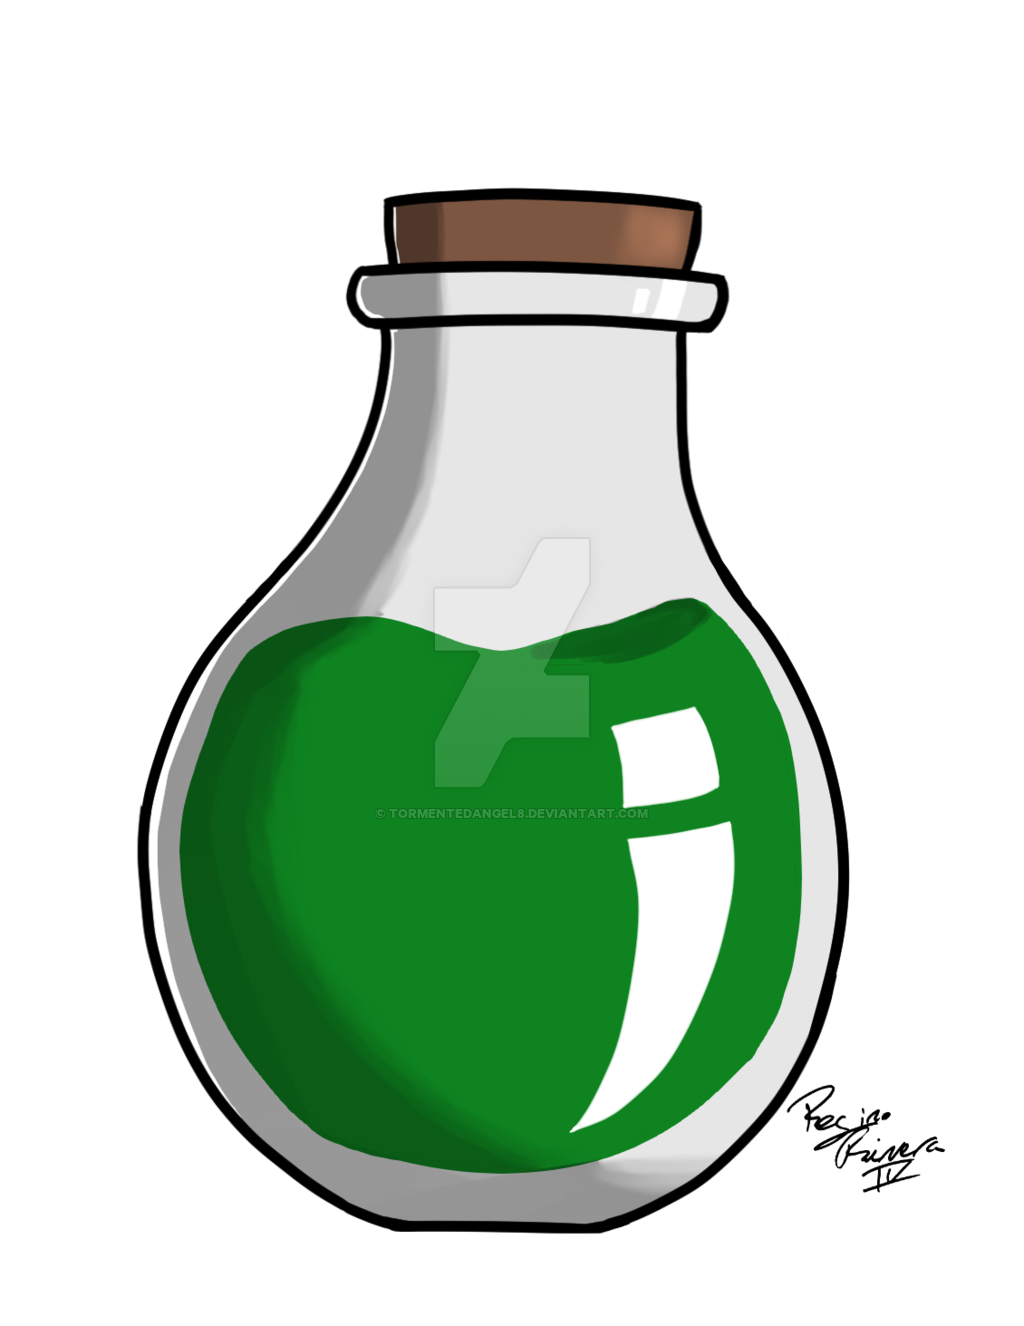 bottle clipart potion